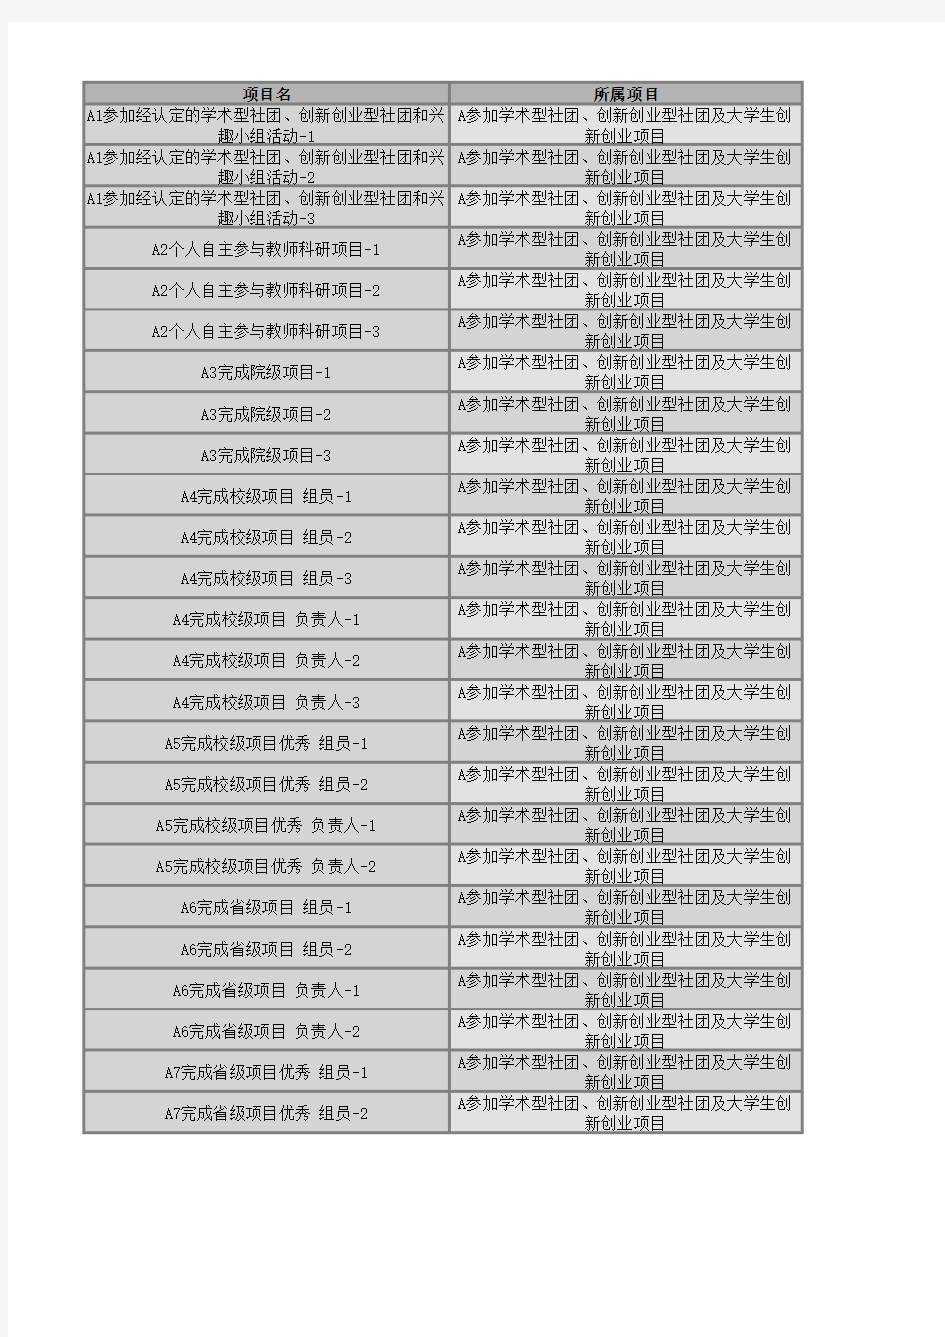 四川大学本科生创新创业教育学分项目编号对应表